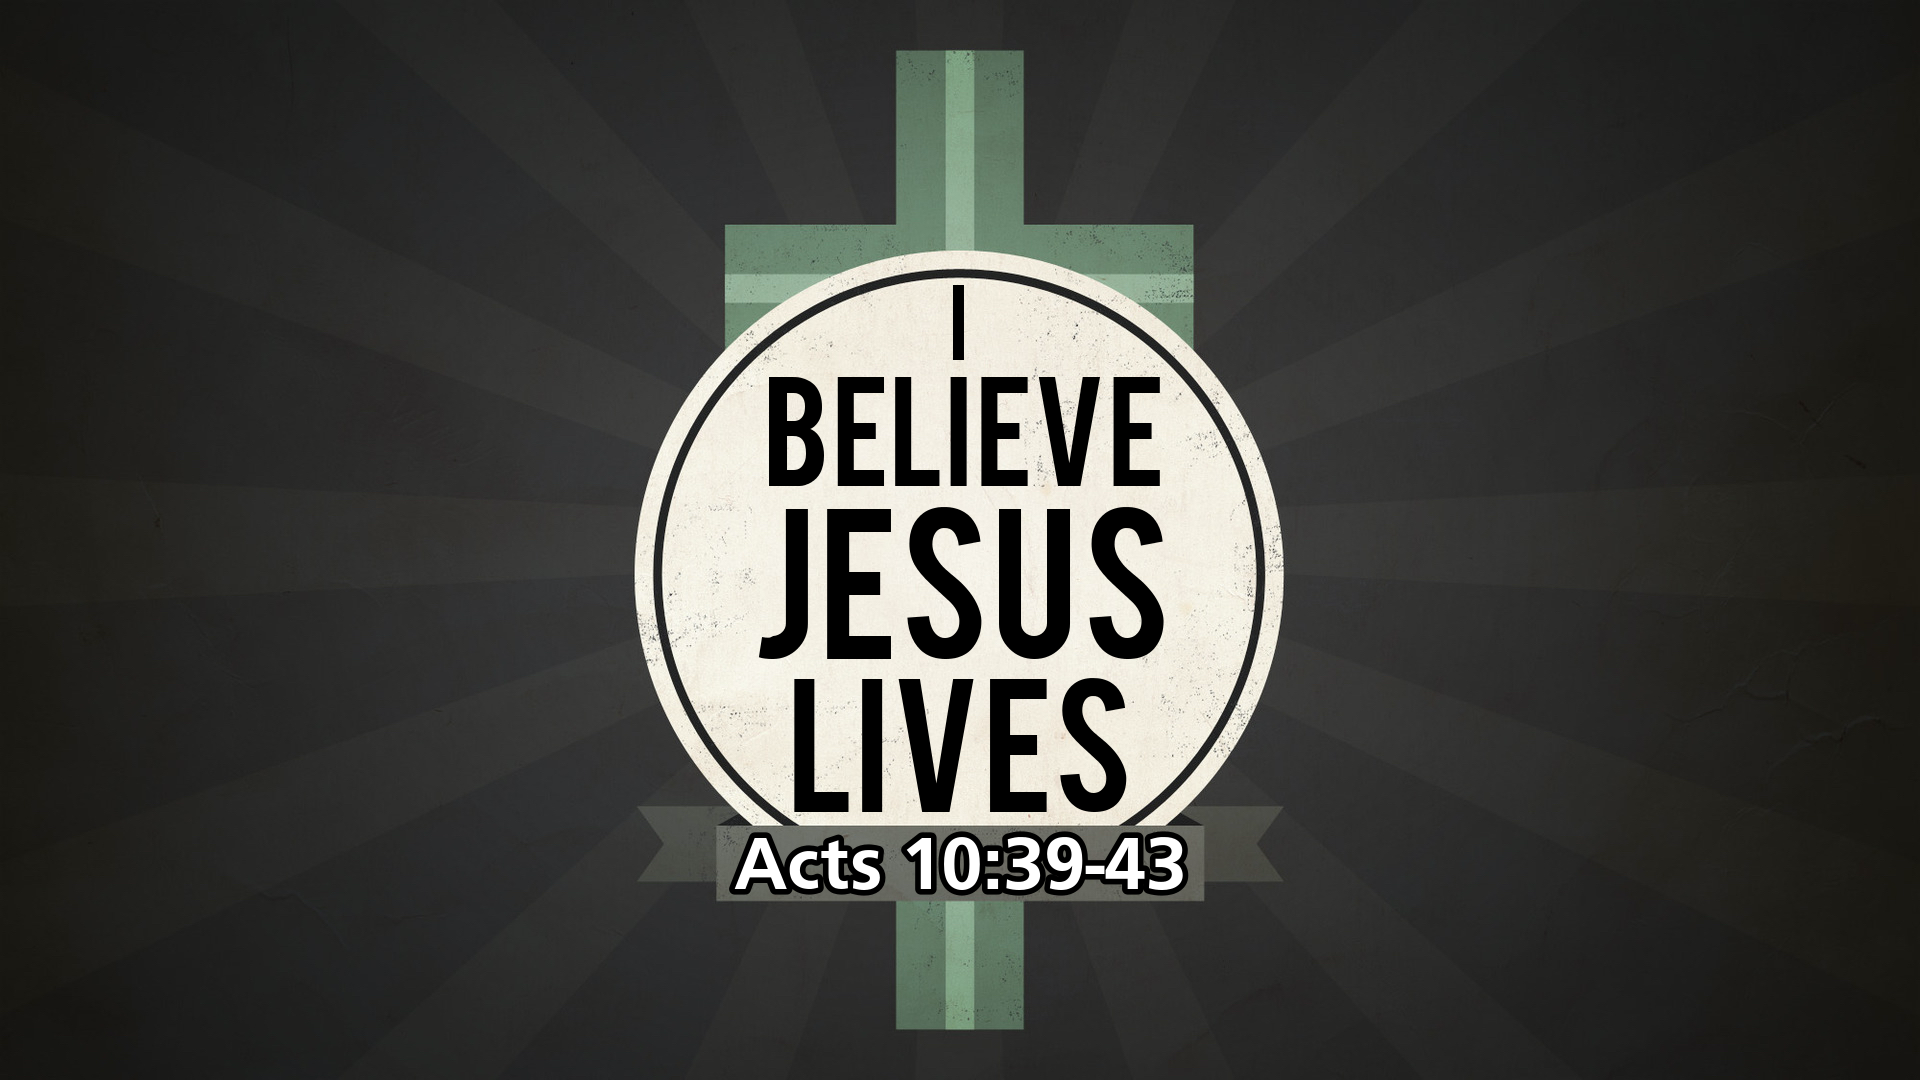 “I Believe Jesus Lives”